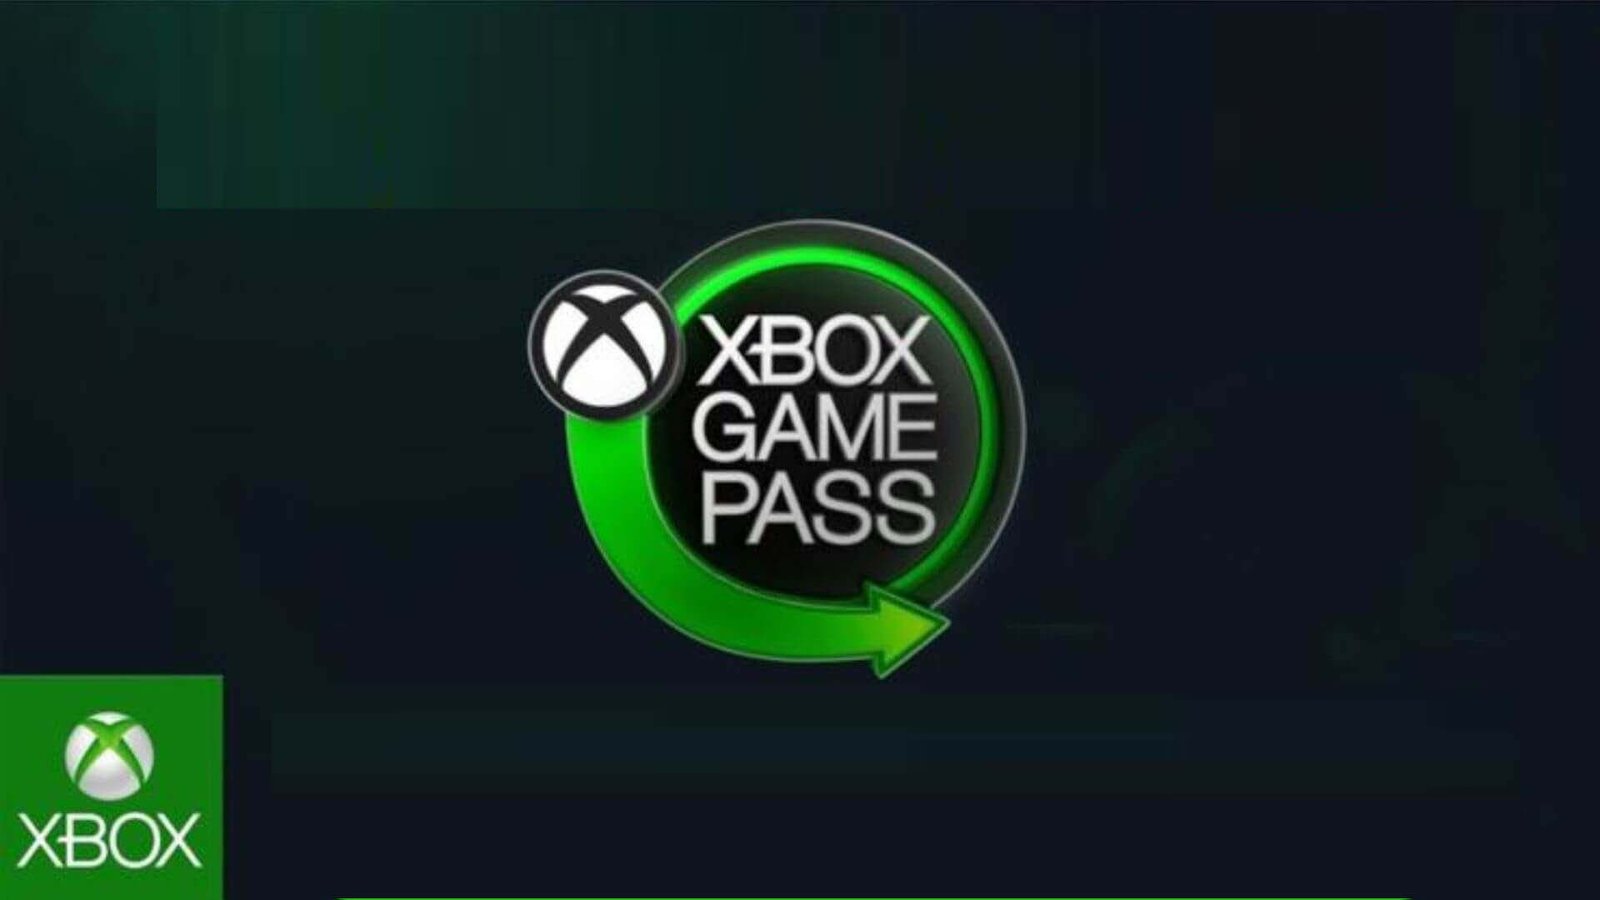 Corriger Application Xbox Game Pass Ne fonctionne pas sur Android